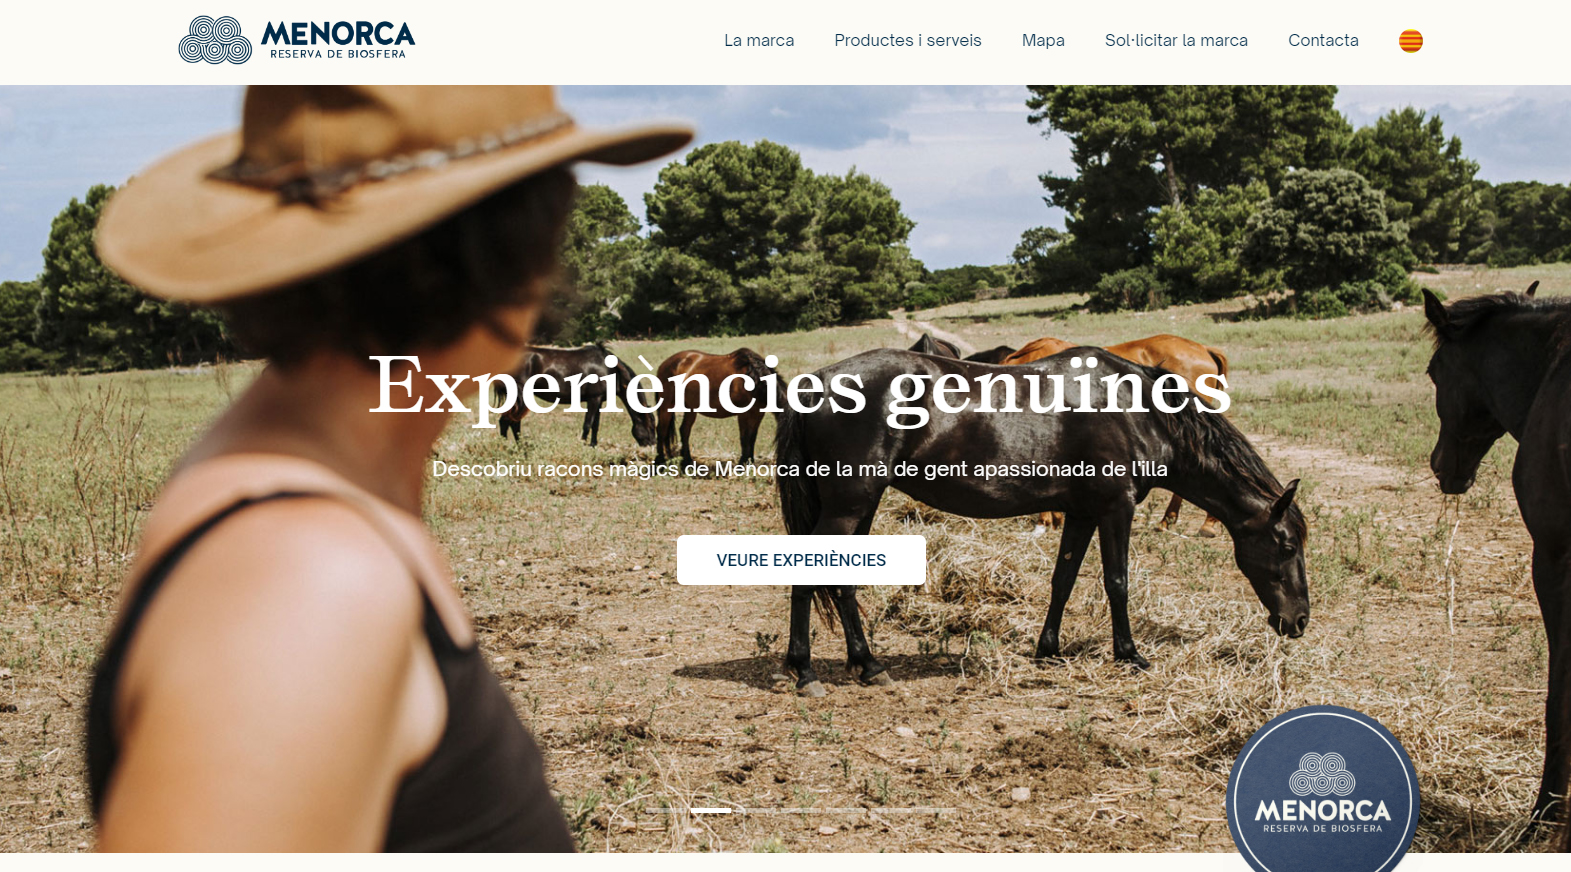 Menorca Reserva de Biosfera estrena una nova pàgina web enfocada al segell de sostenibilitat